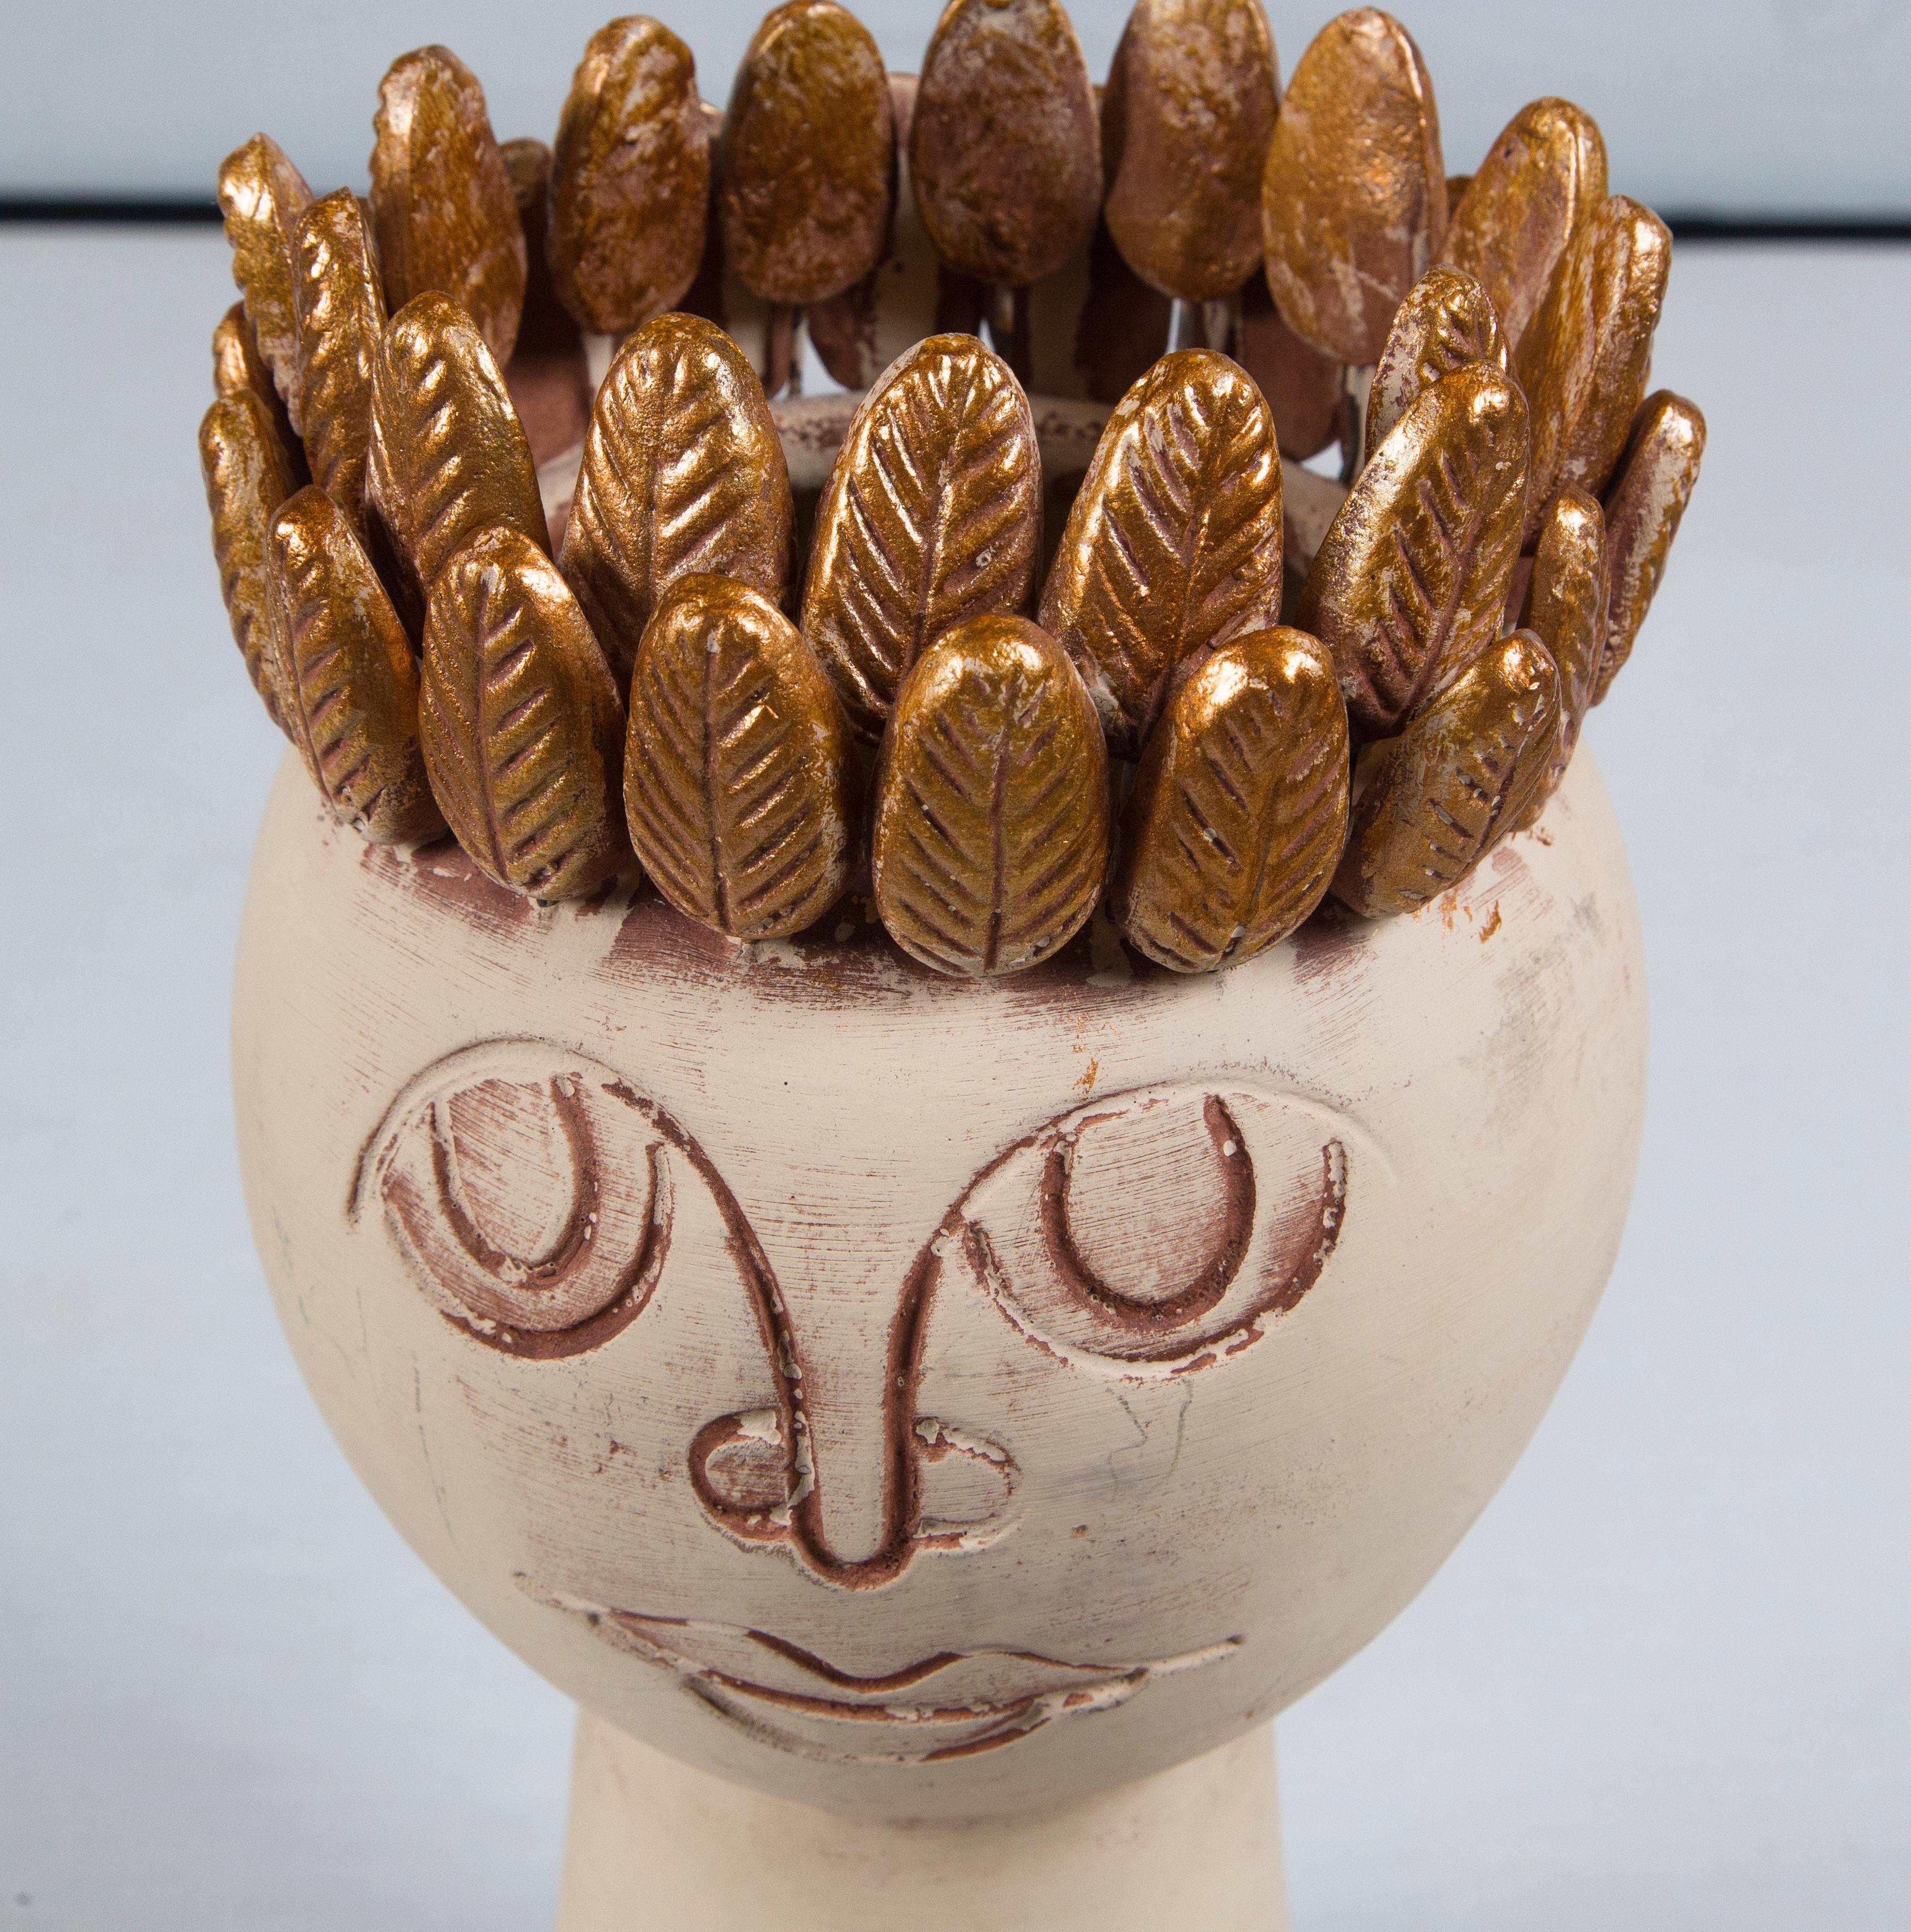 handmade pottery vases